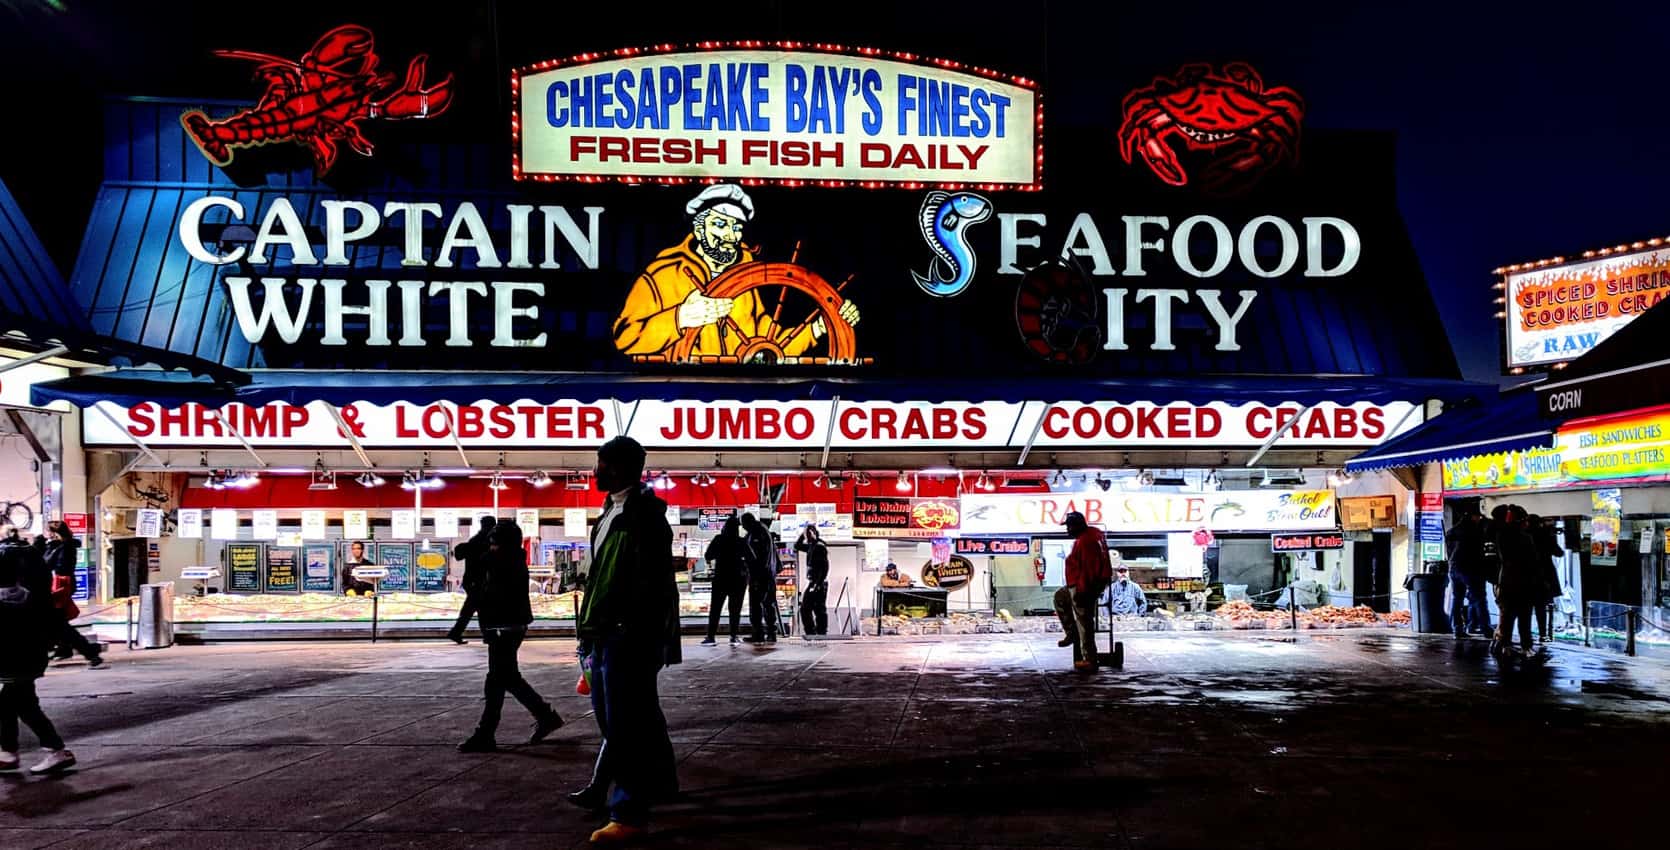 Maine Avenue Fish Market in D.C.